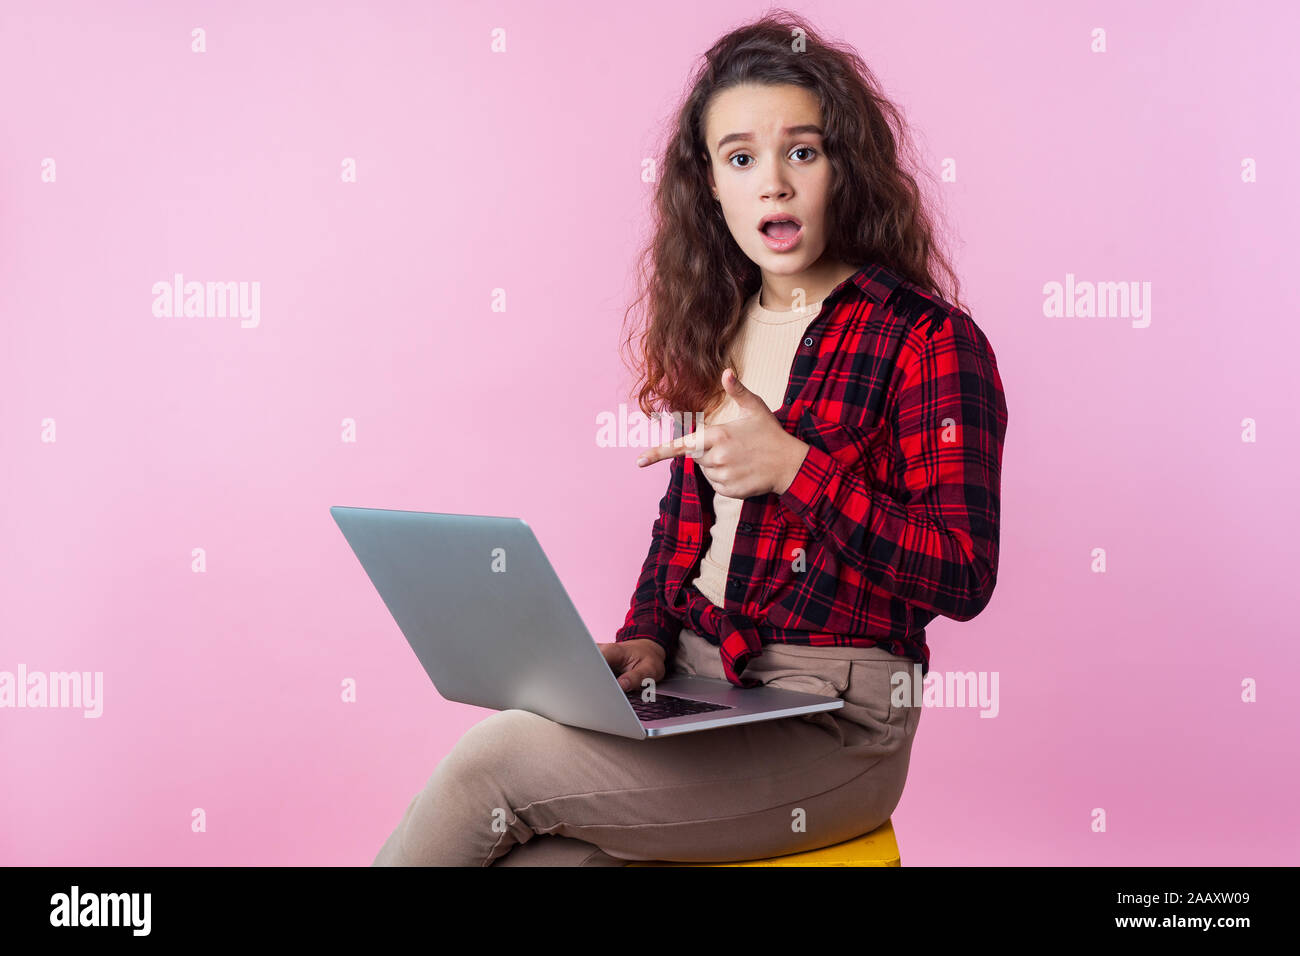 Portrait d'utilisateur d'ordinateur frustrés, teen girl with curly cheveux brune chemise à carreaux en pointant sur un ordinateur portable, l'air inquiet à propos de erreur de logiciel, prog Banque D'Images